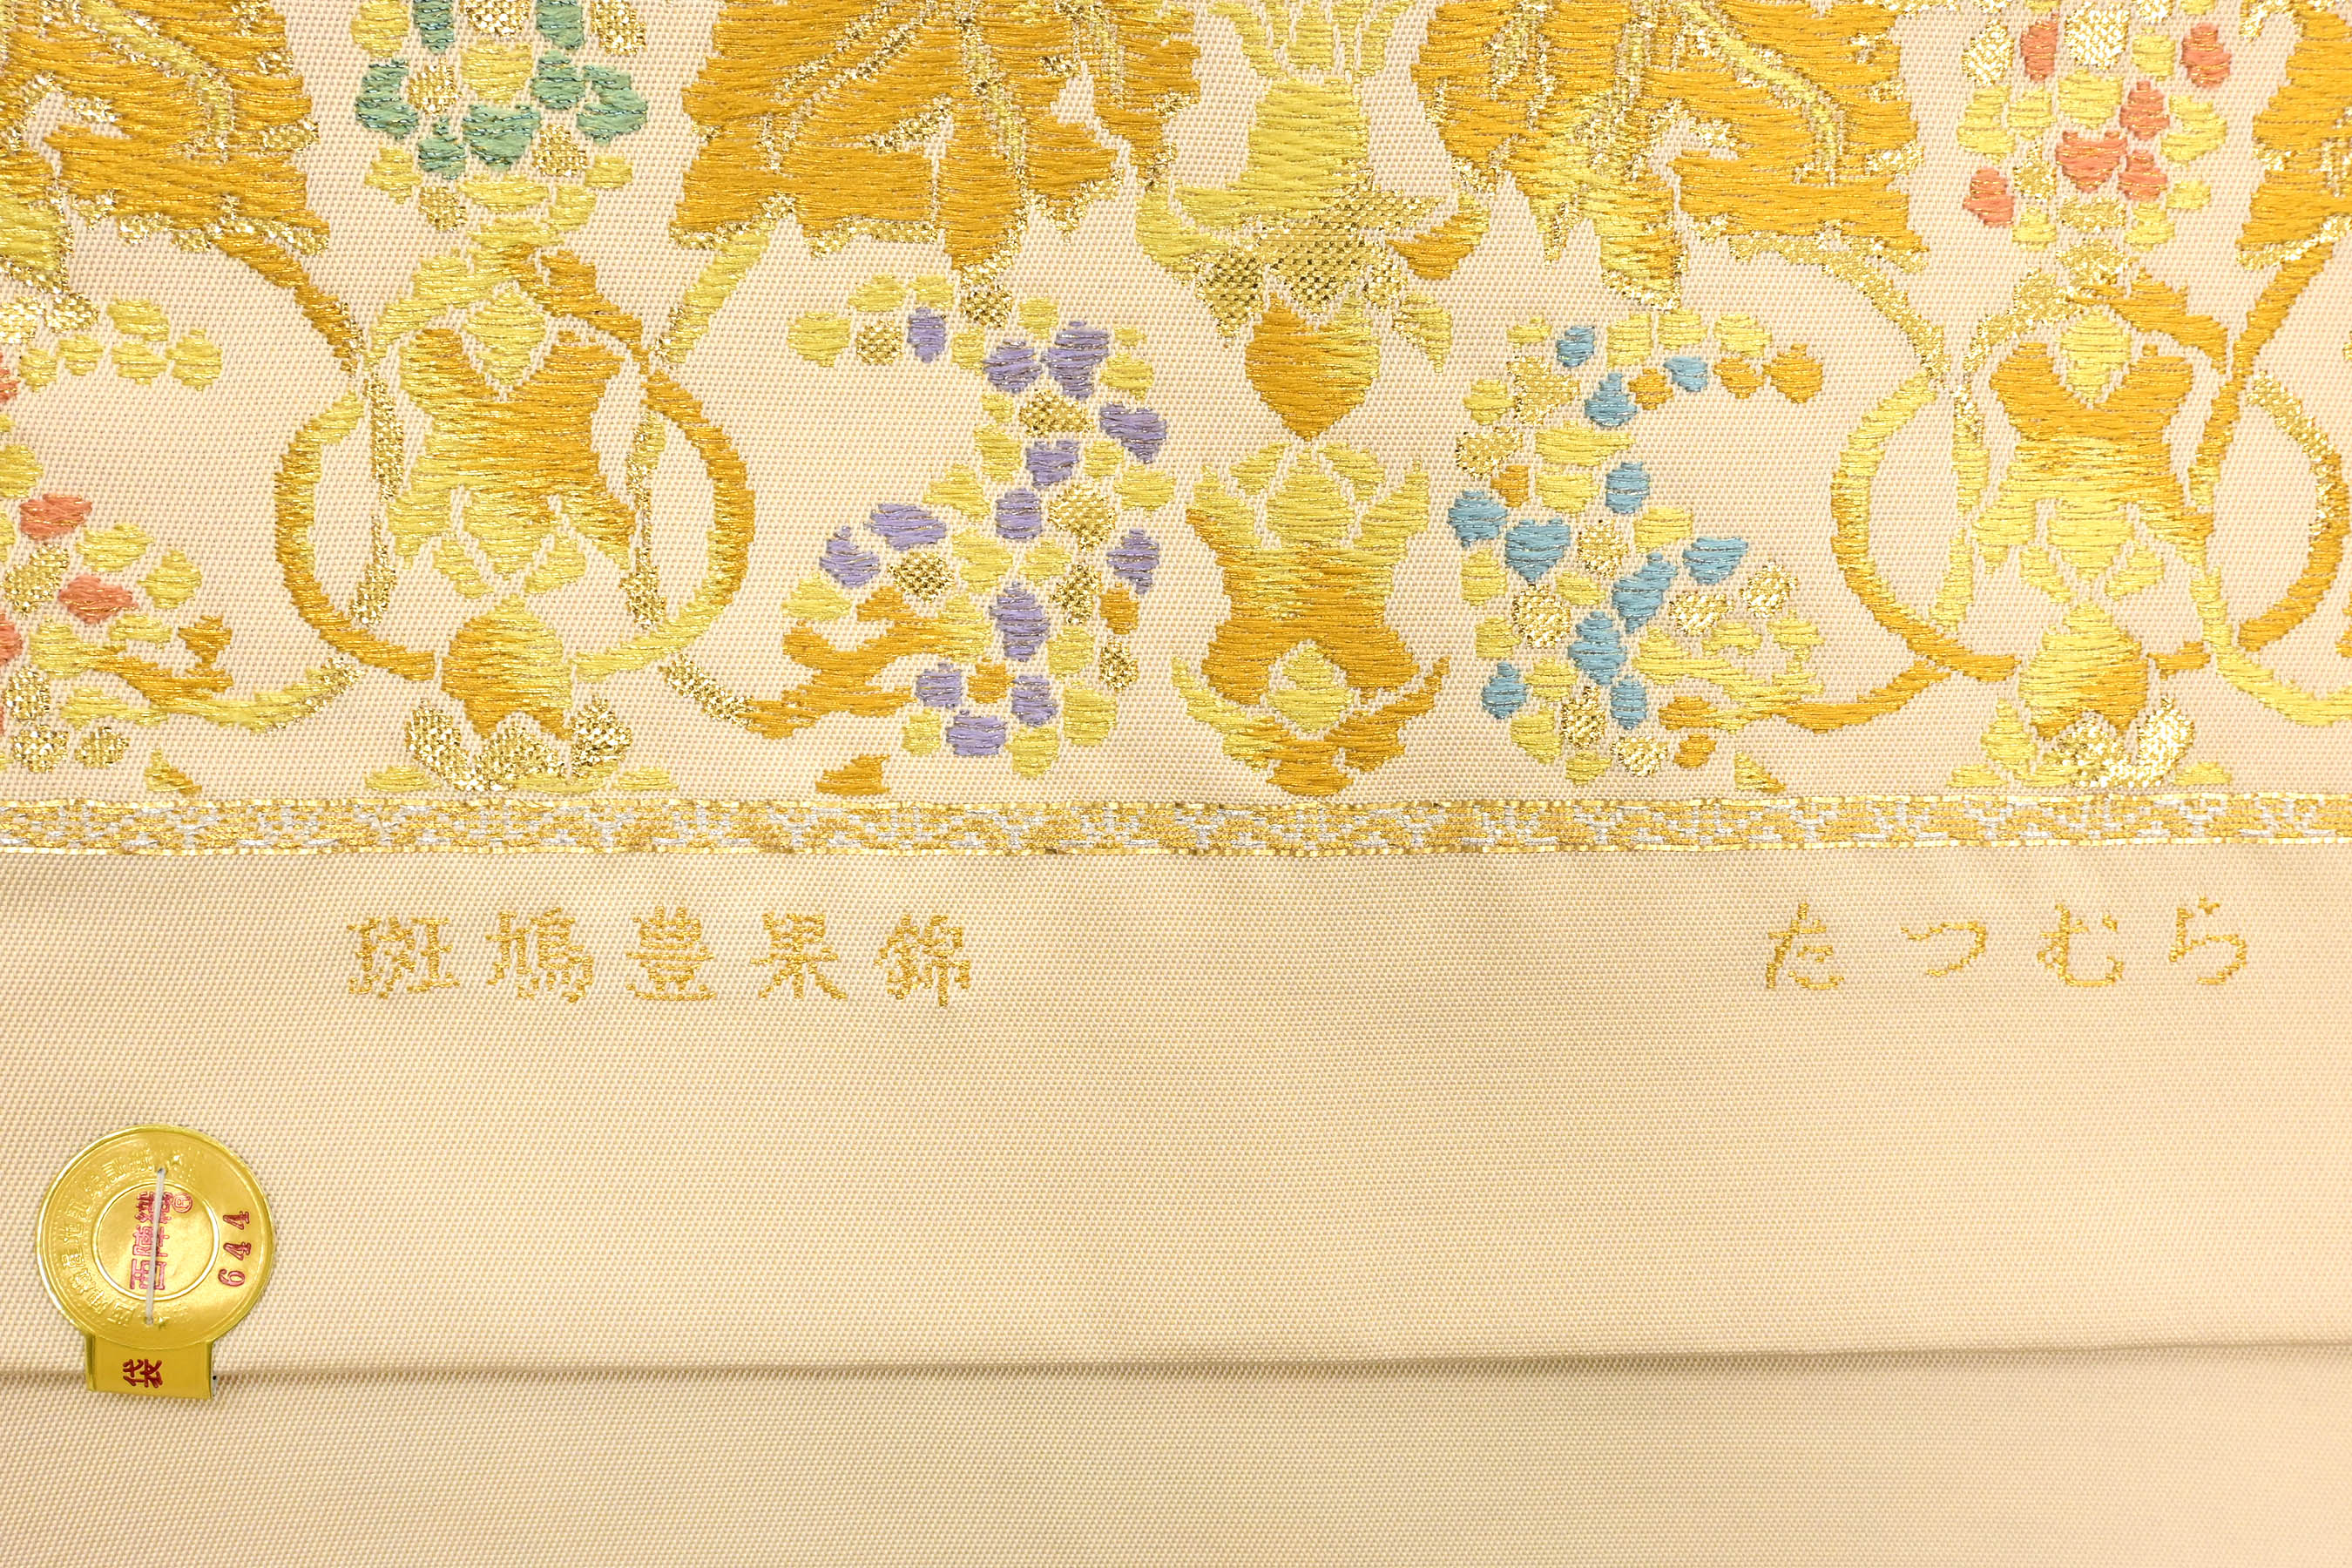 龍村平蔵の織物です。龍村美術織物の古いものです。珍しいと思います。